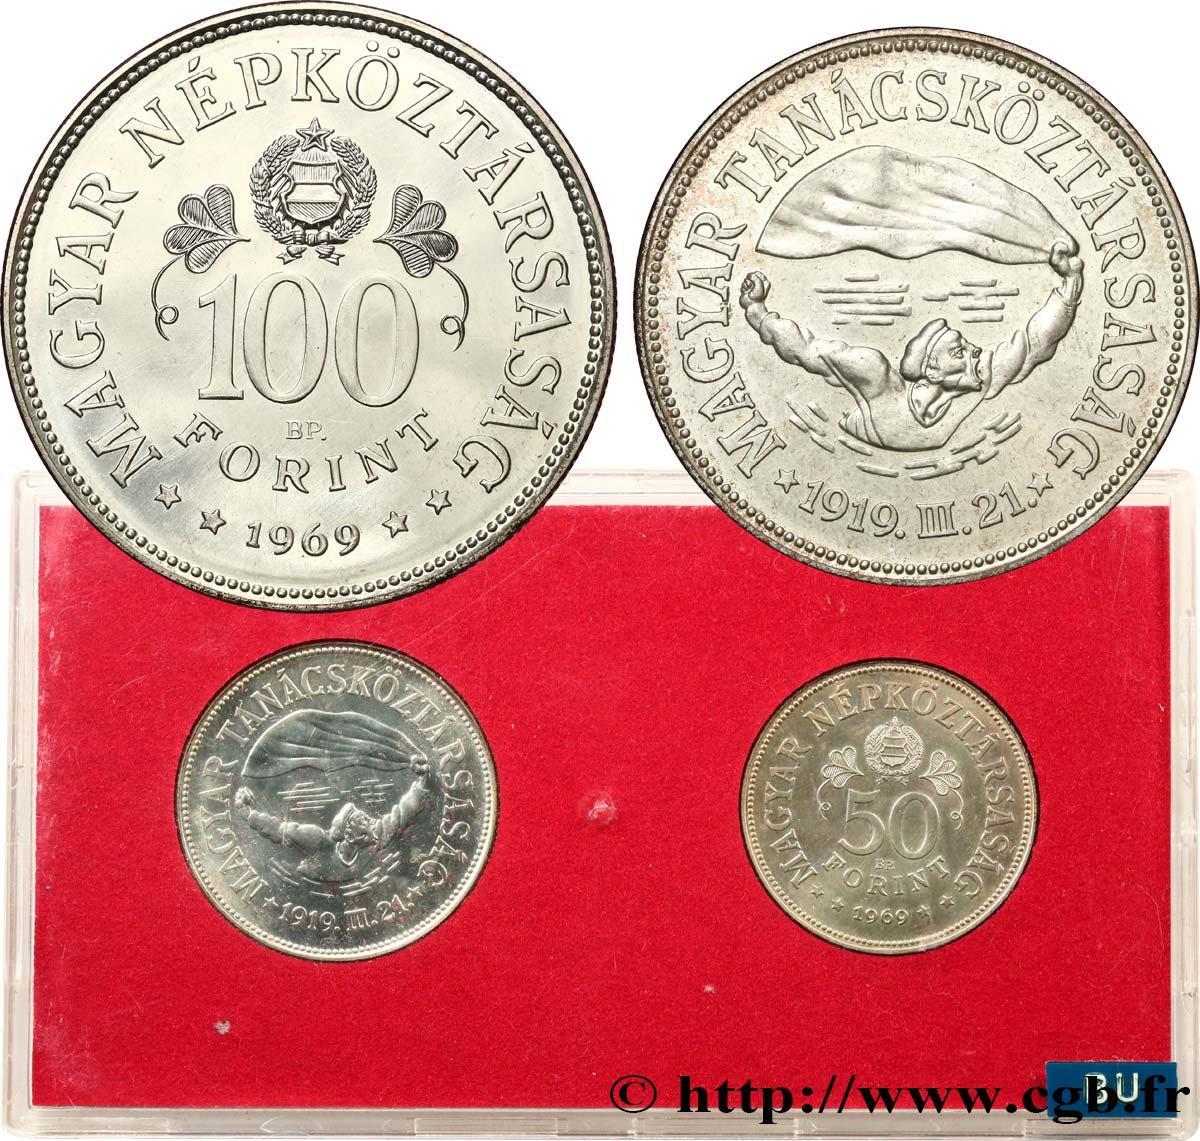 UNGHERIA Série FDC - 2 monnaies - 50e anniversaire des soviets du 31 mars 1919 1969 Budapest FDC 